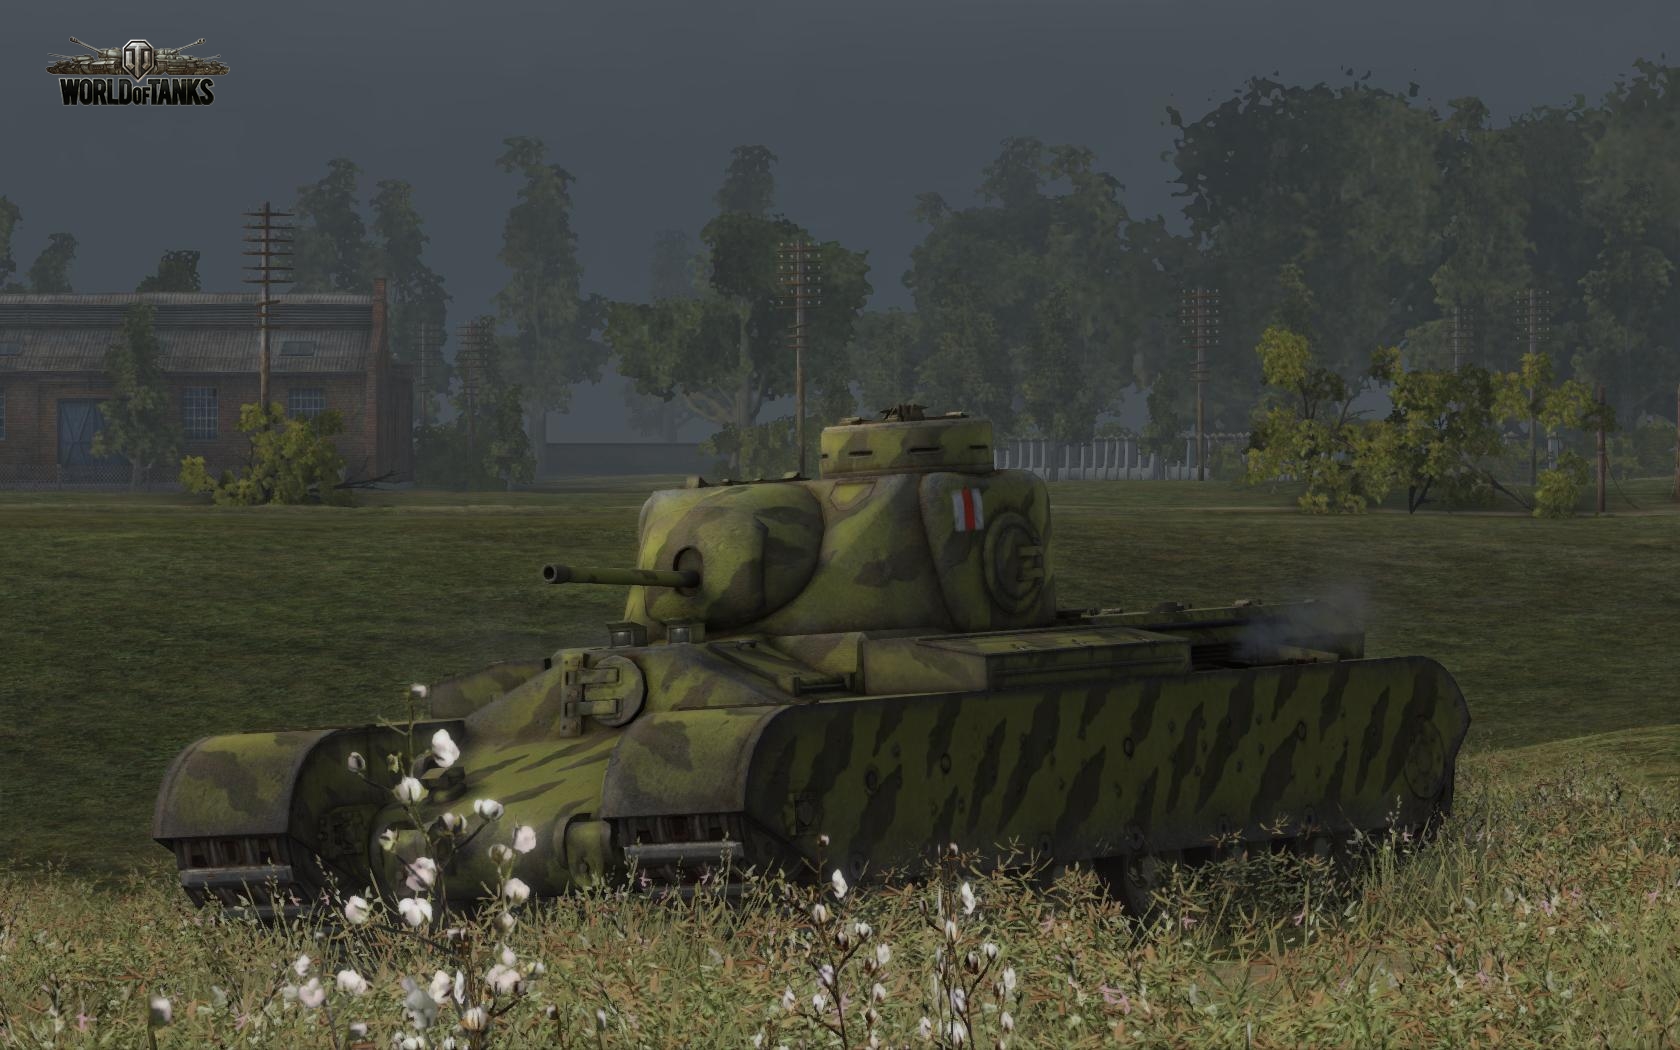 Маленькие черепашки или штурмовые танки АТ-1 - АТ-15.